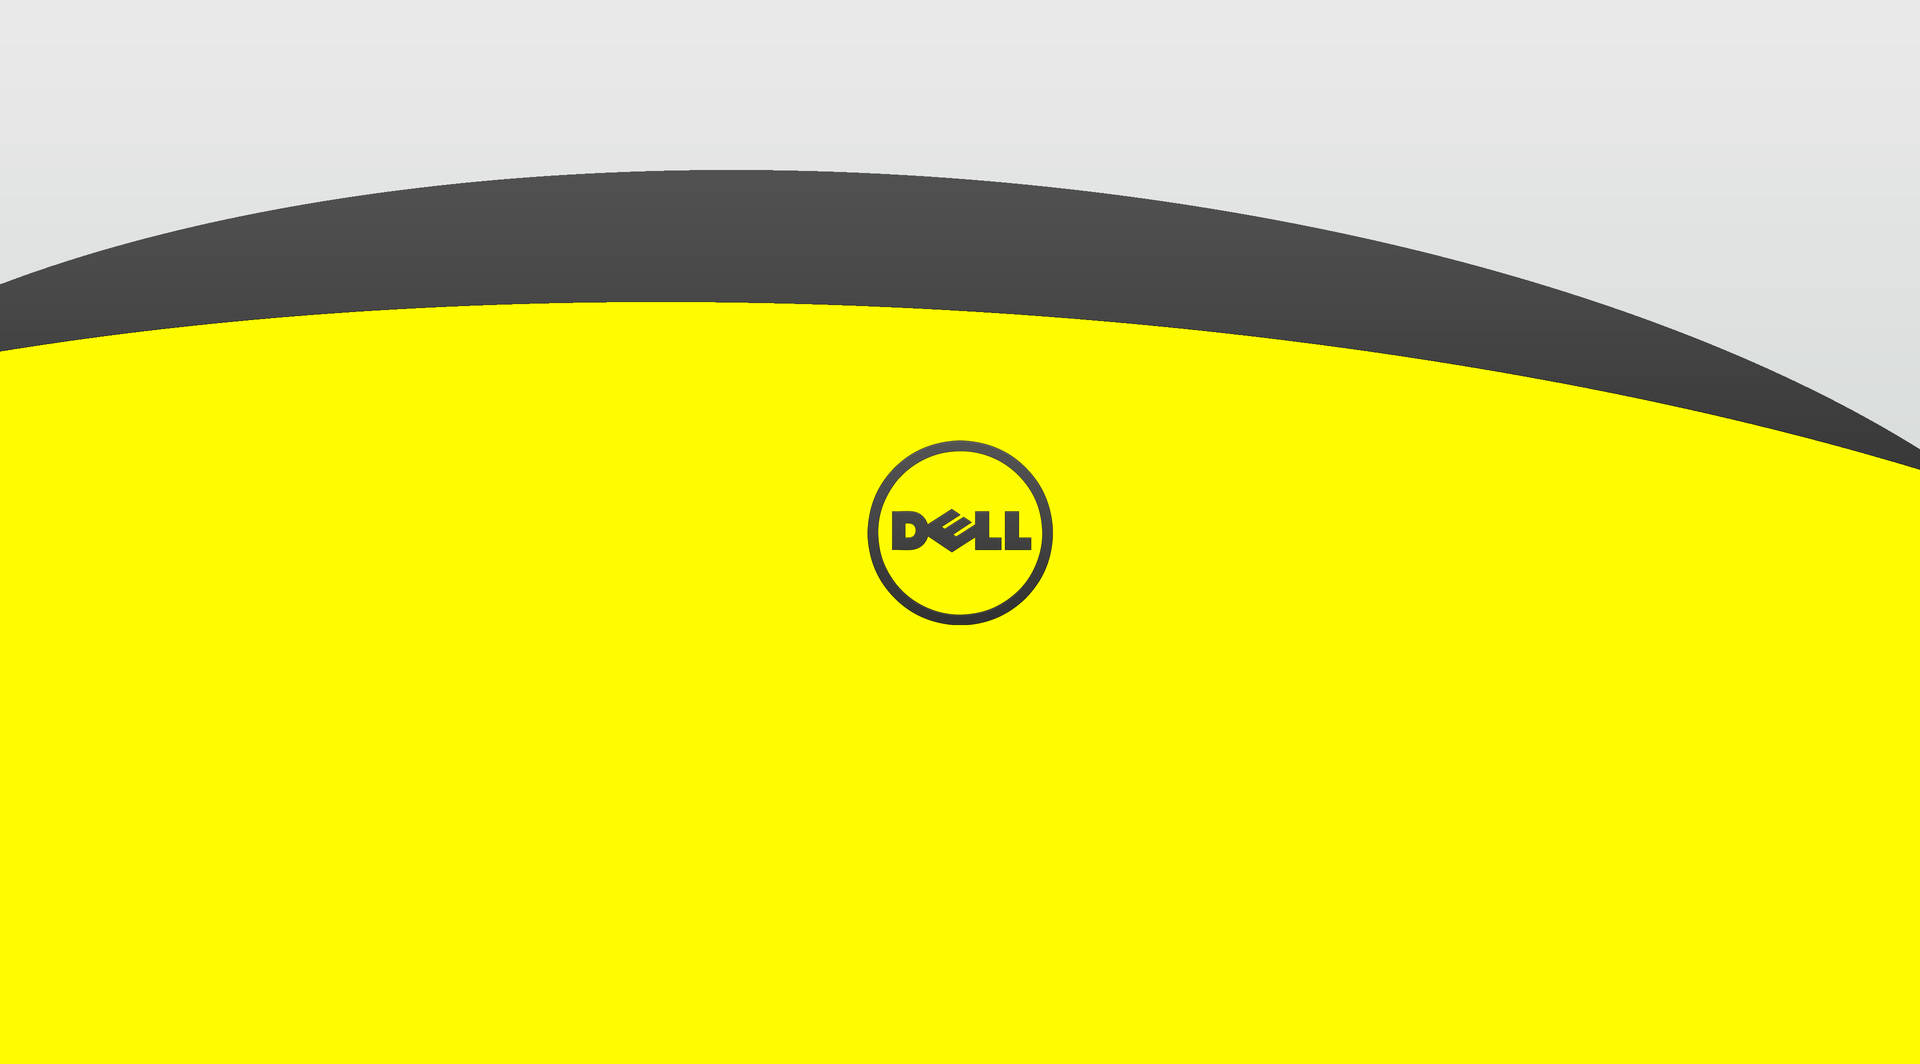 Dell 4k-logo På Gul Wallpaper